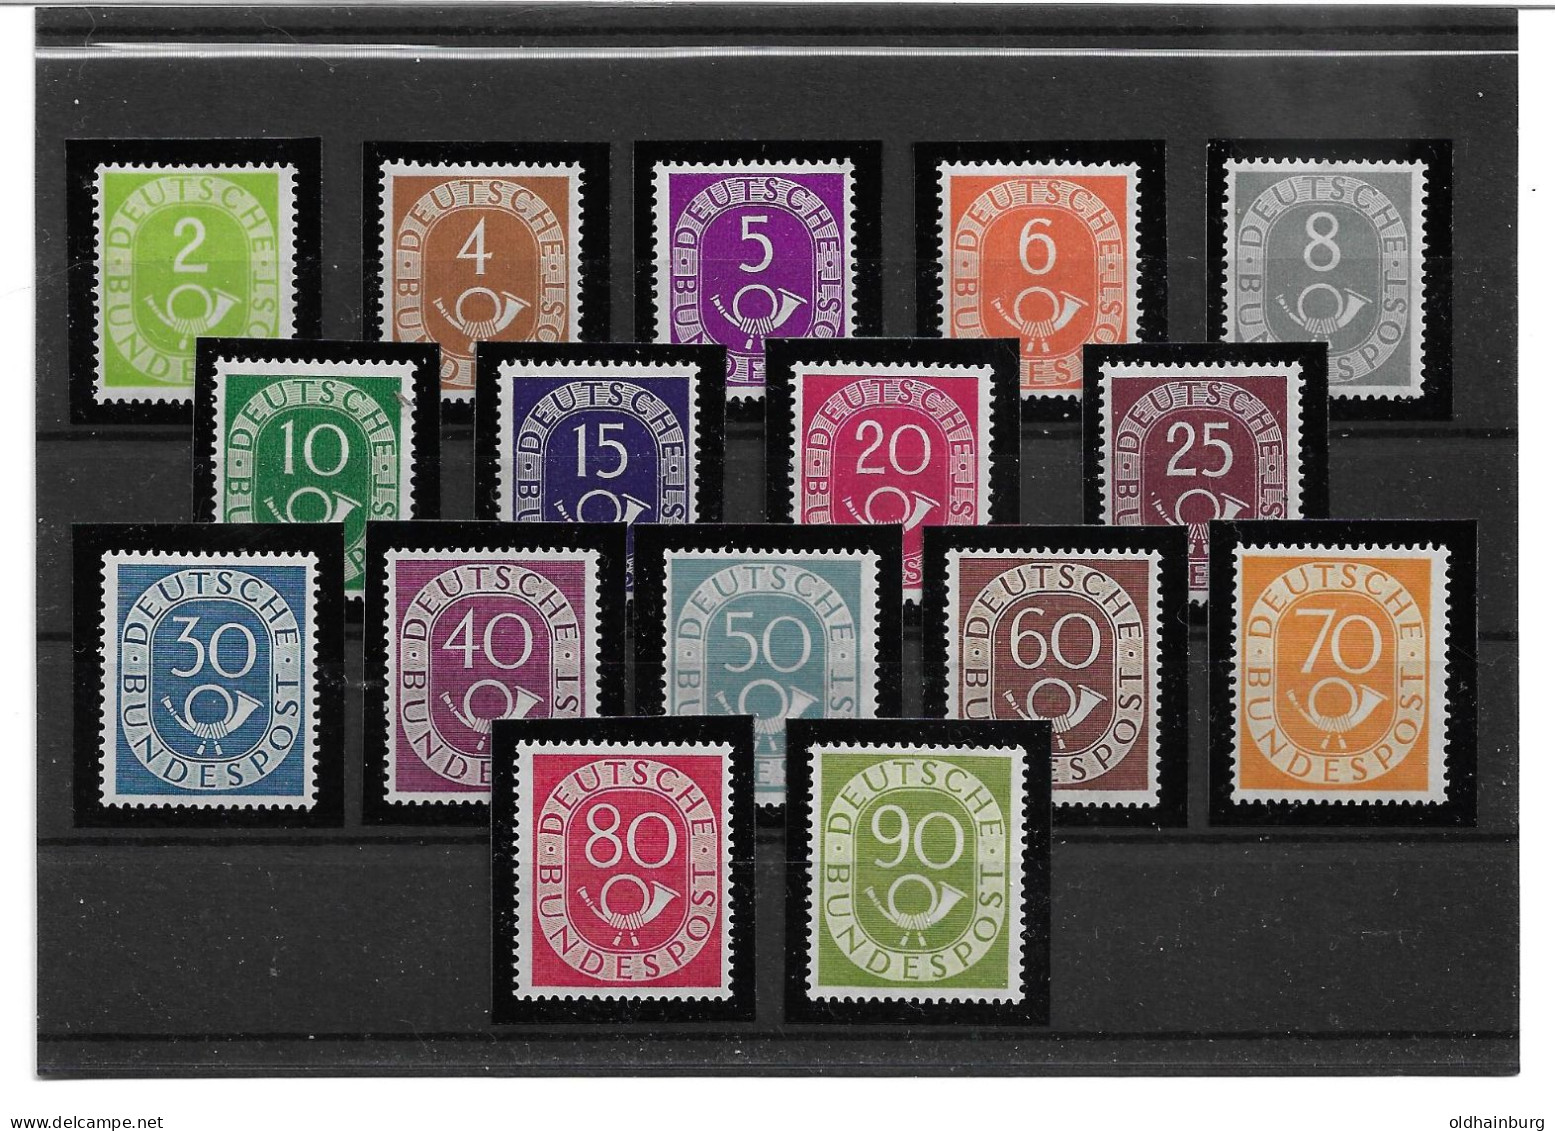 Bund 1951: Posthorn Serie 123- 138 ** Komplett, Versandkostenfrei Wertbrief Innerhalb EU (2.200.- M€) - Unused Stamps